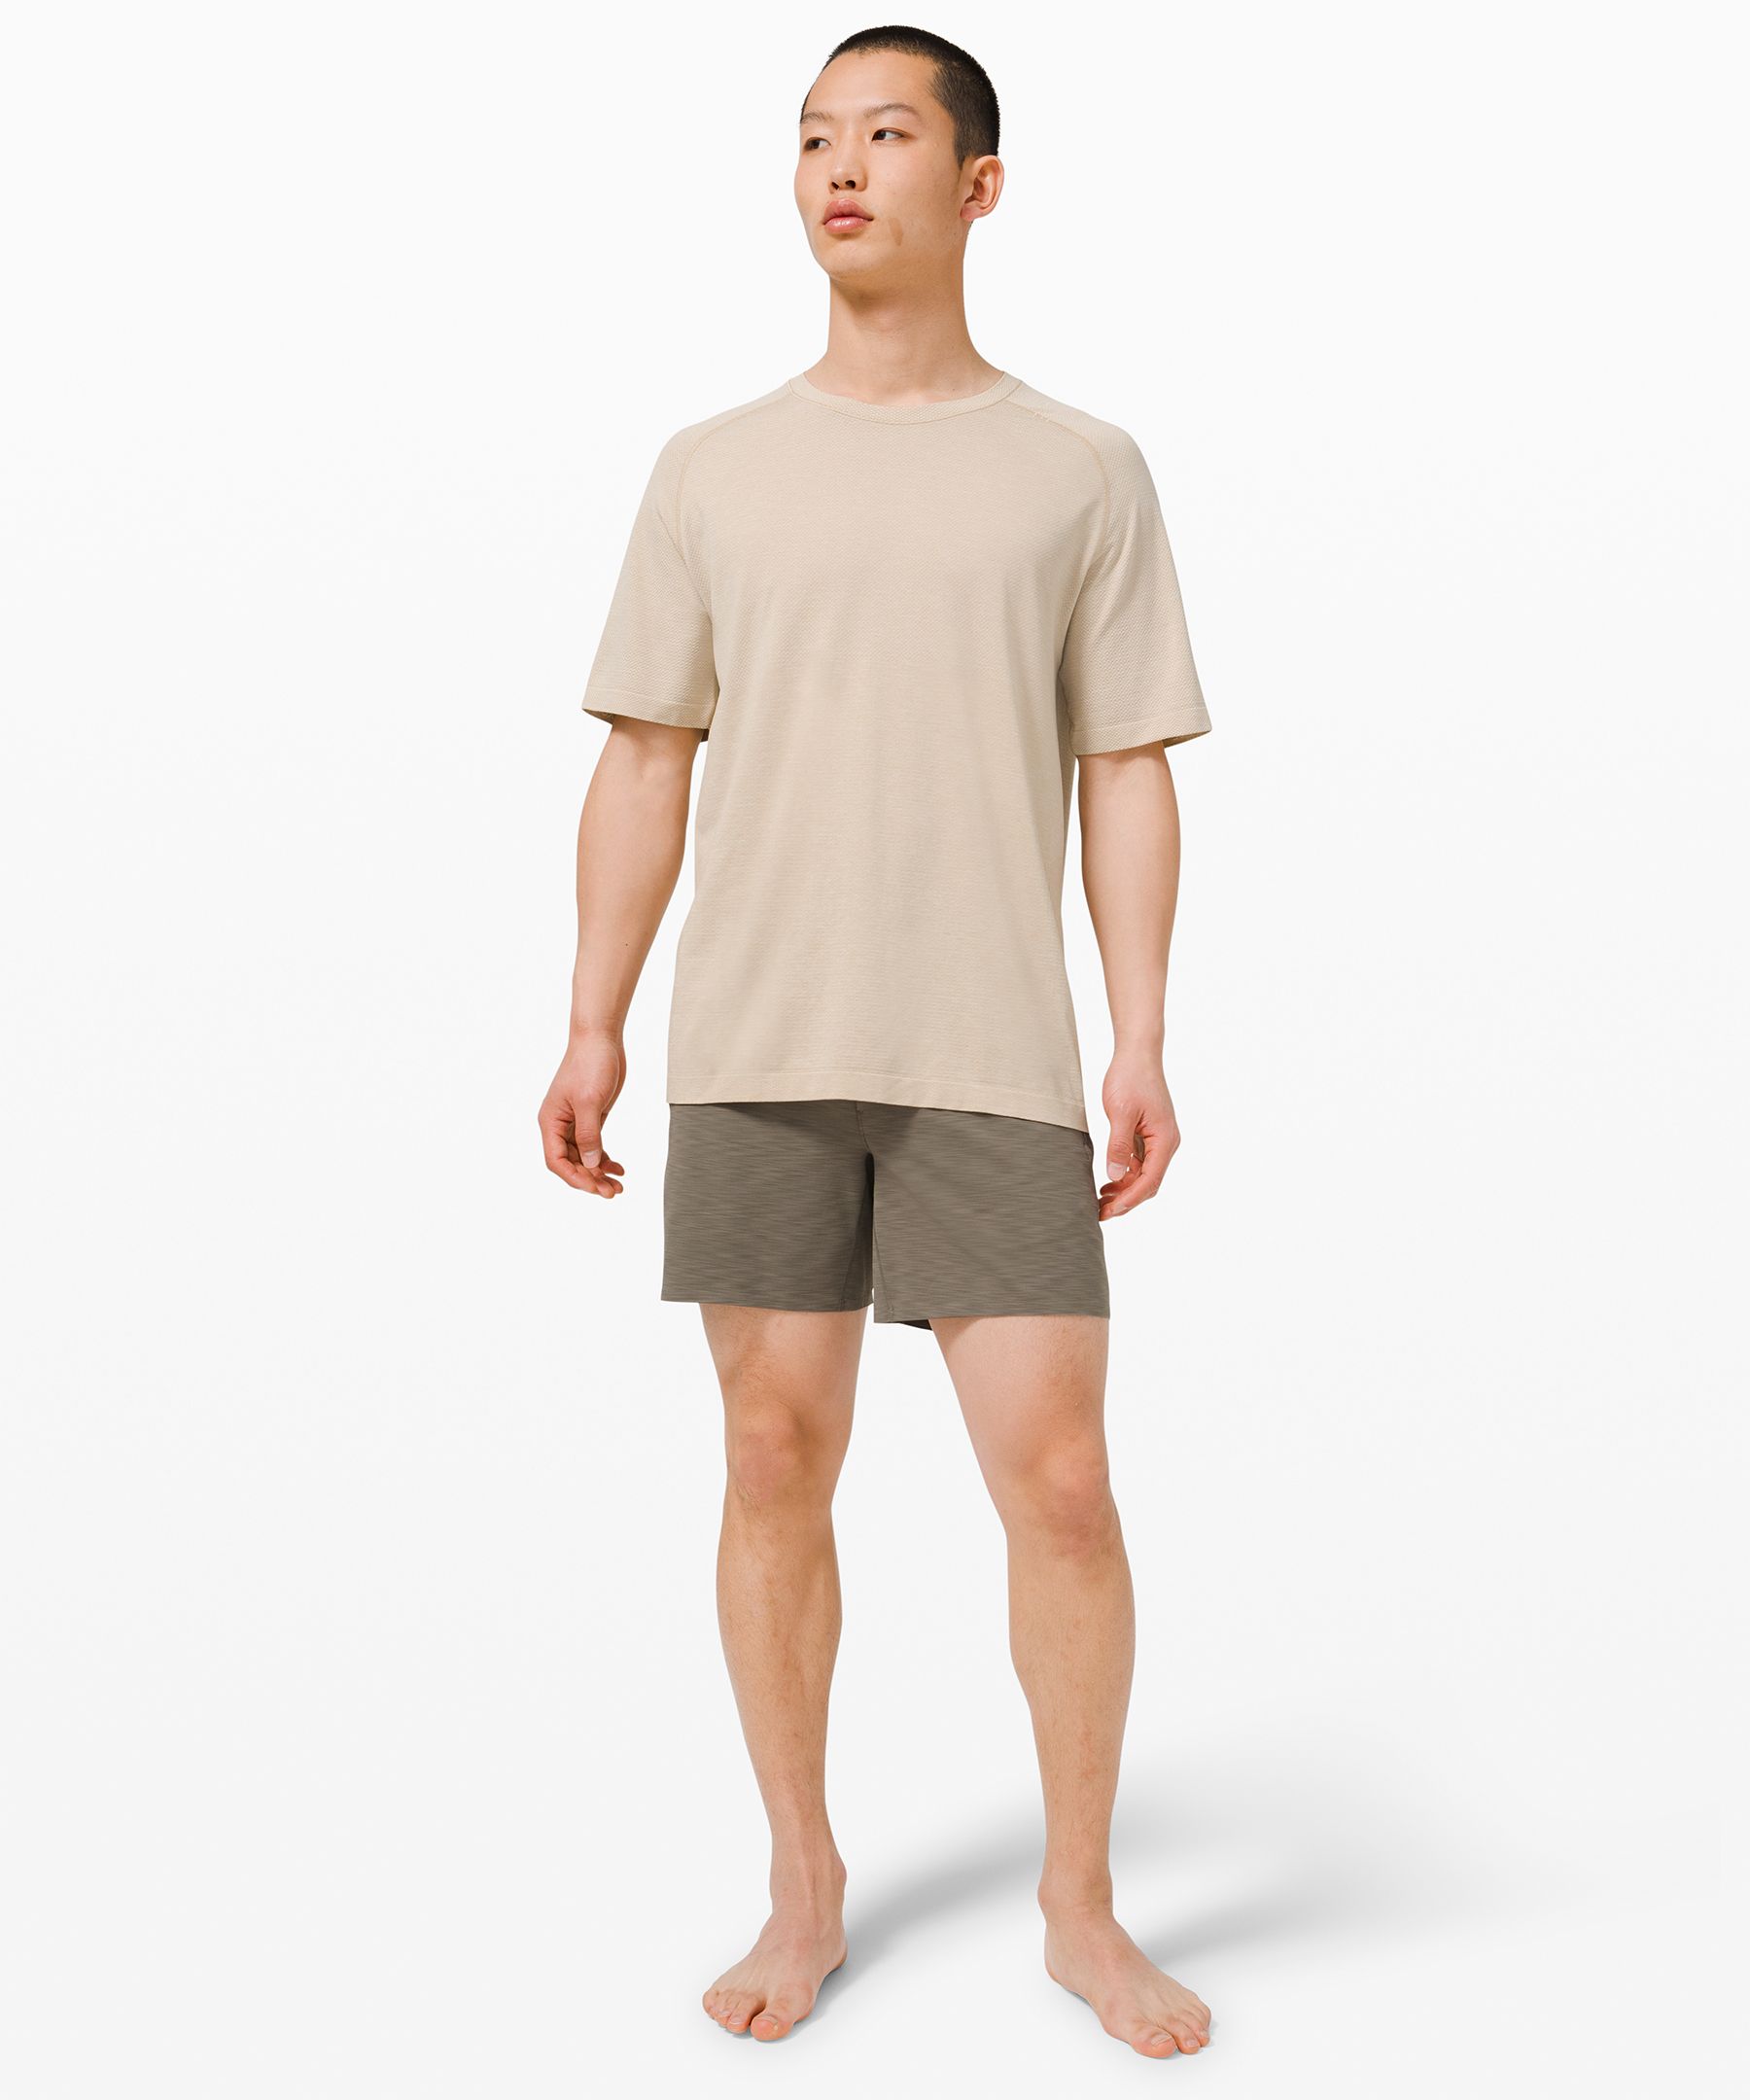 lululemon outlet mens shorts